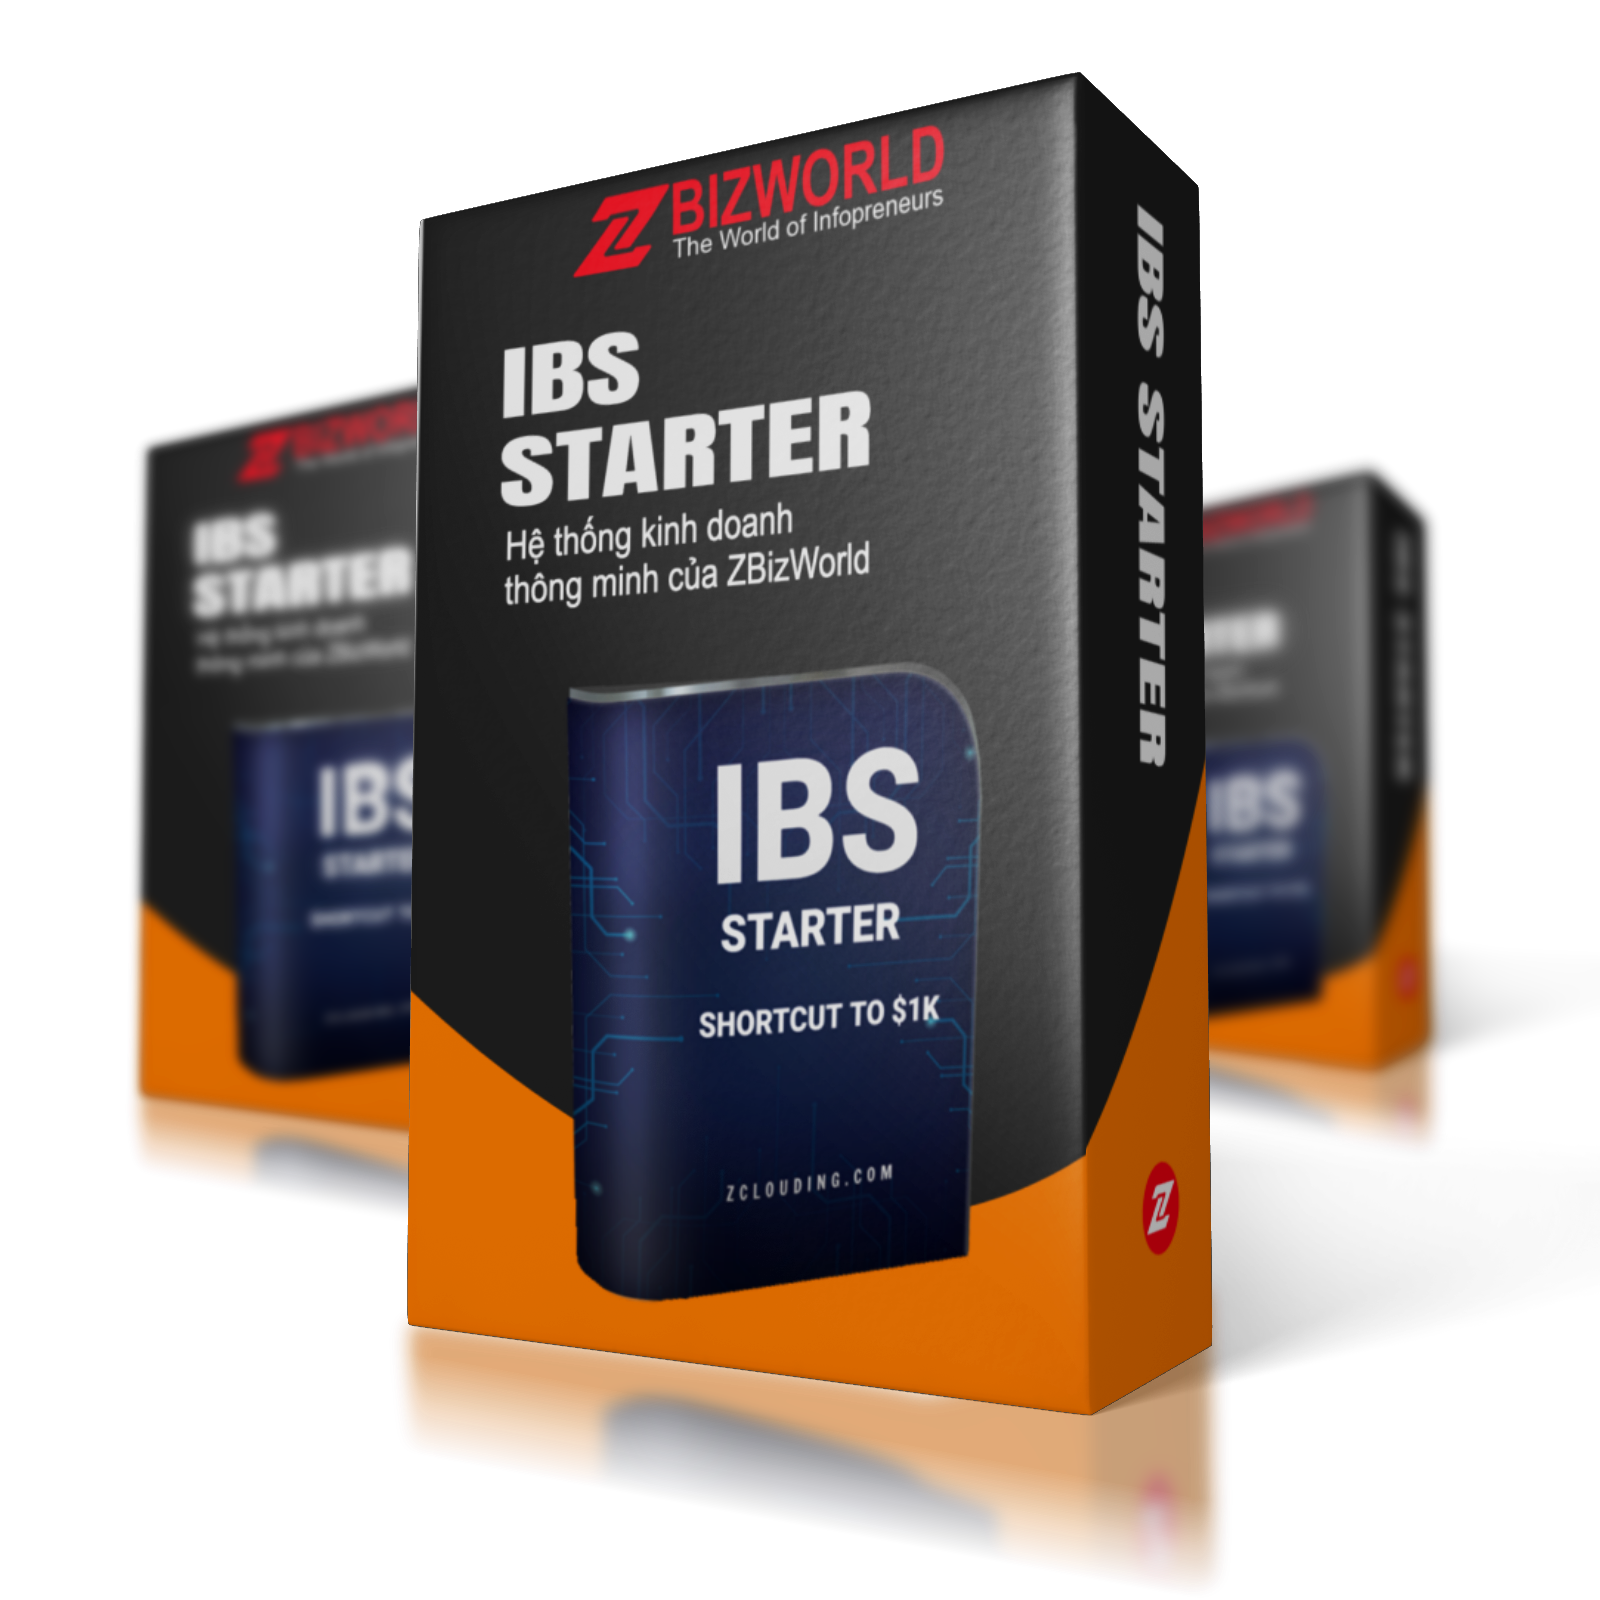 IBS Starter